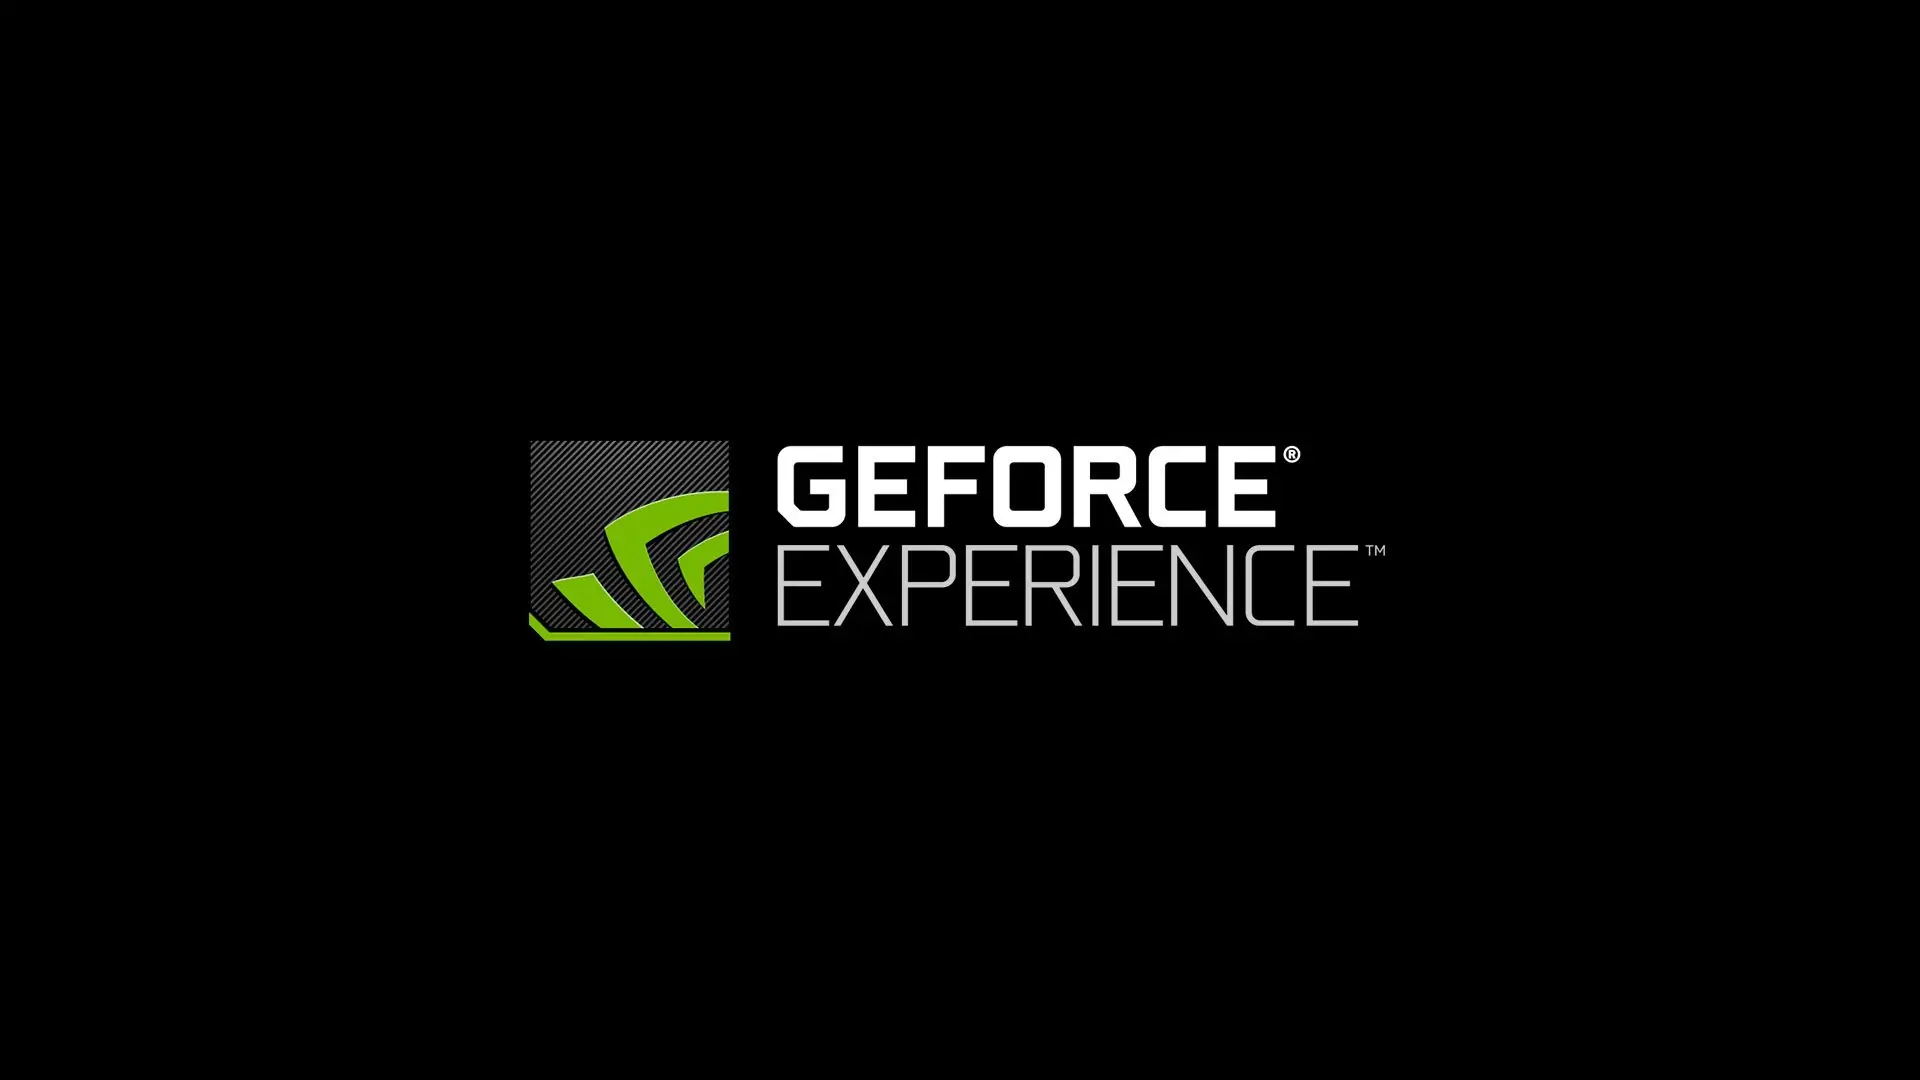 مانیتورینگ دما، ولتاژ و عملکرد کارت گرافیک و اورکلاک کردن به کمک GeForce Experience